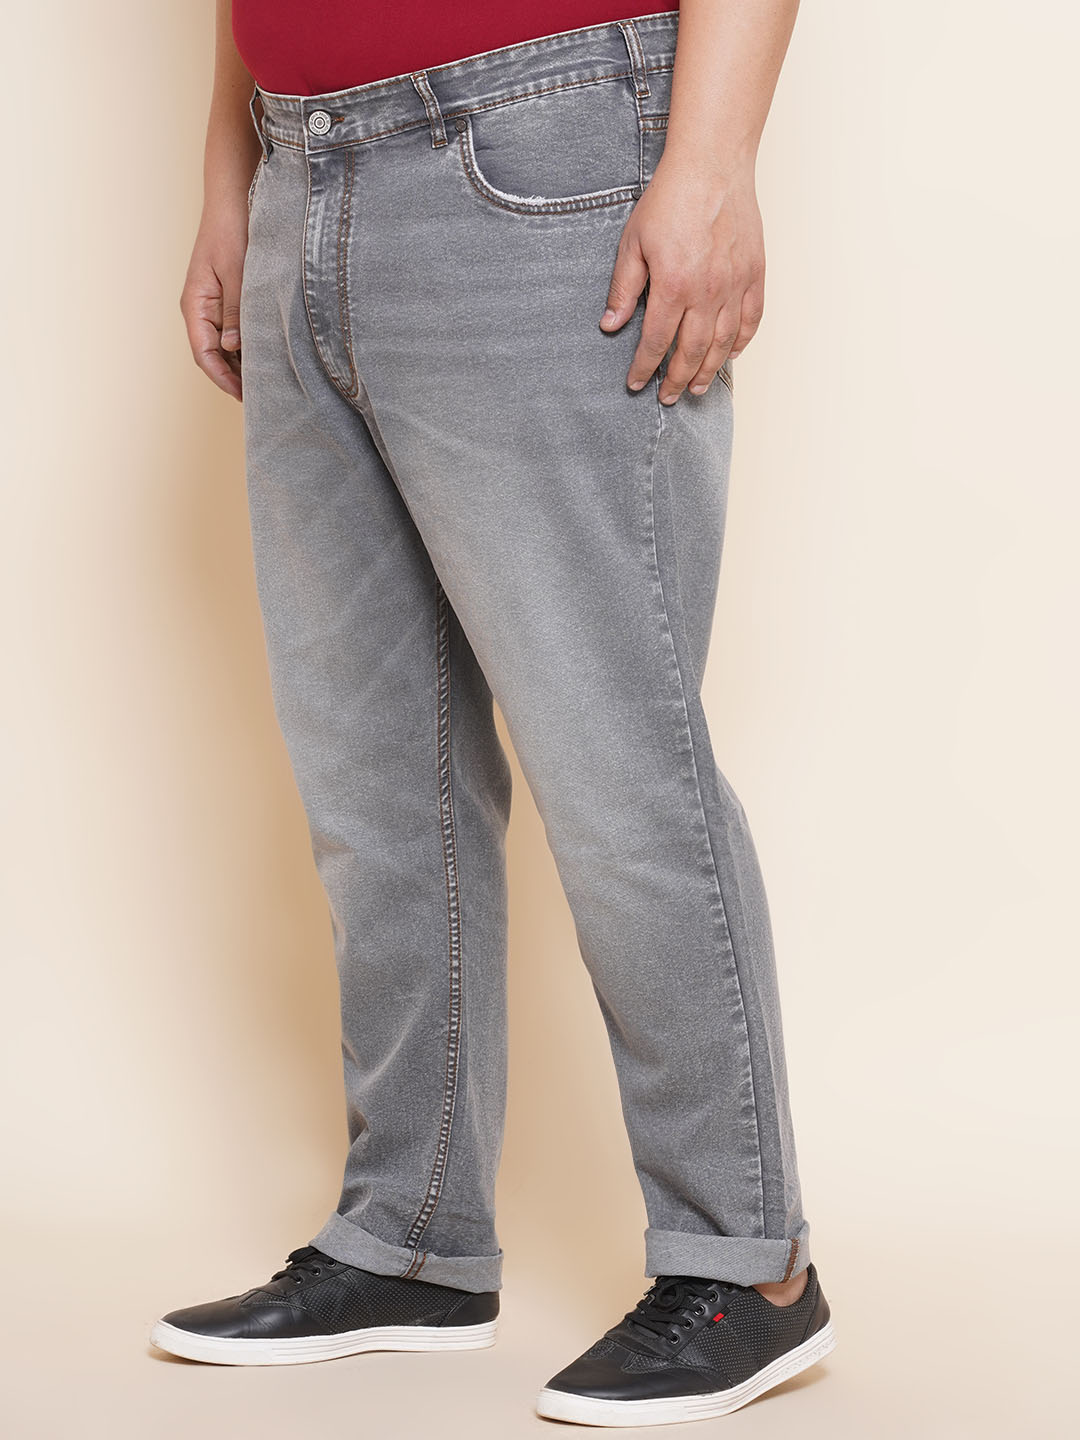 bottomwear/jeans/JPJ27014/jpj27014-4.jpg